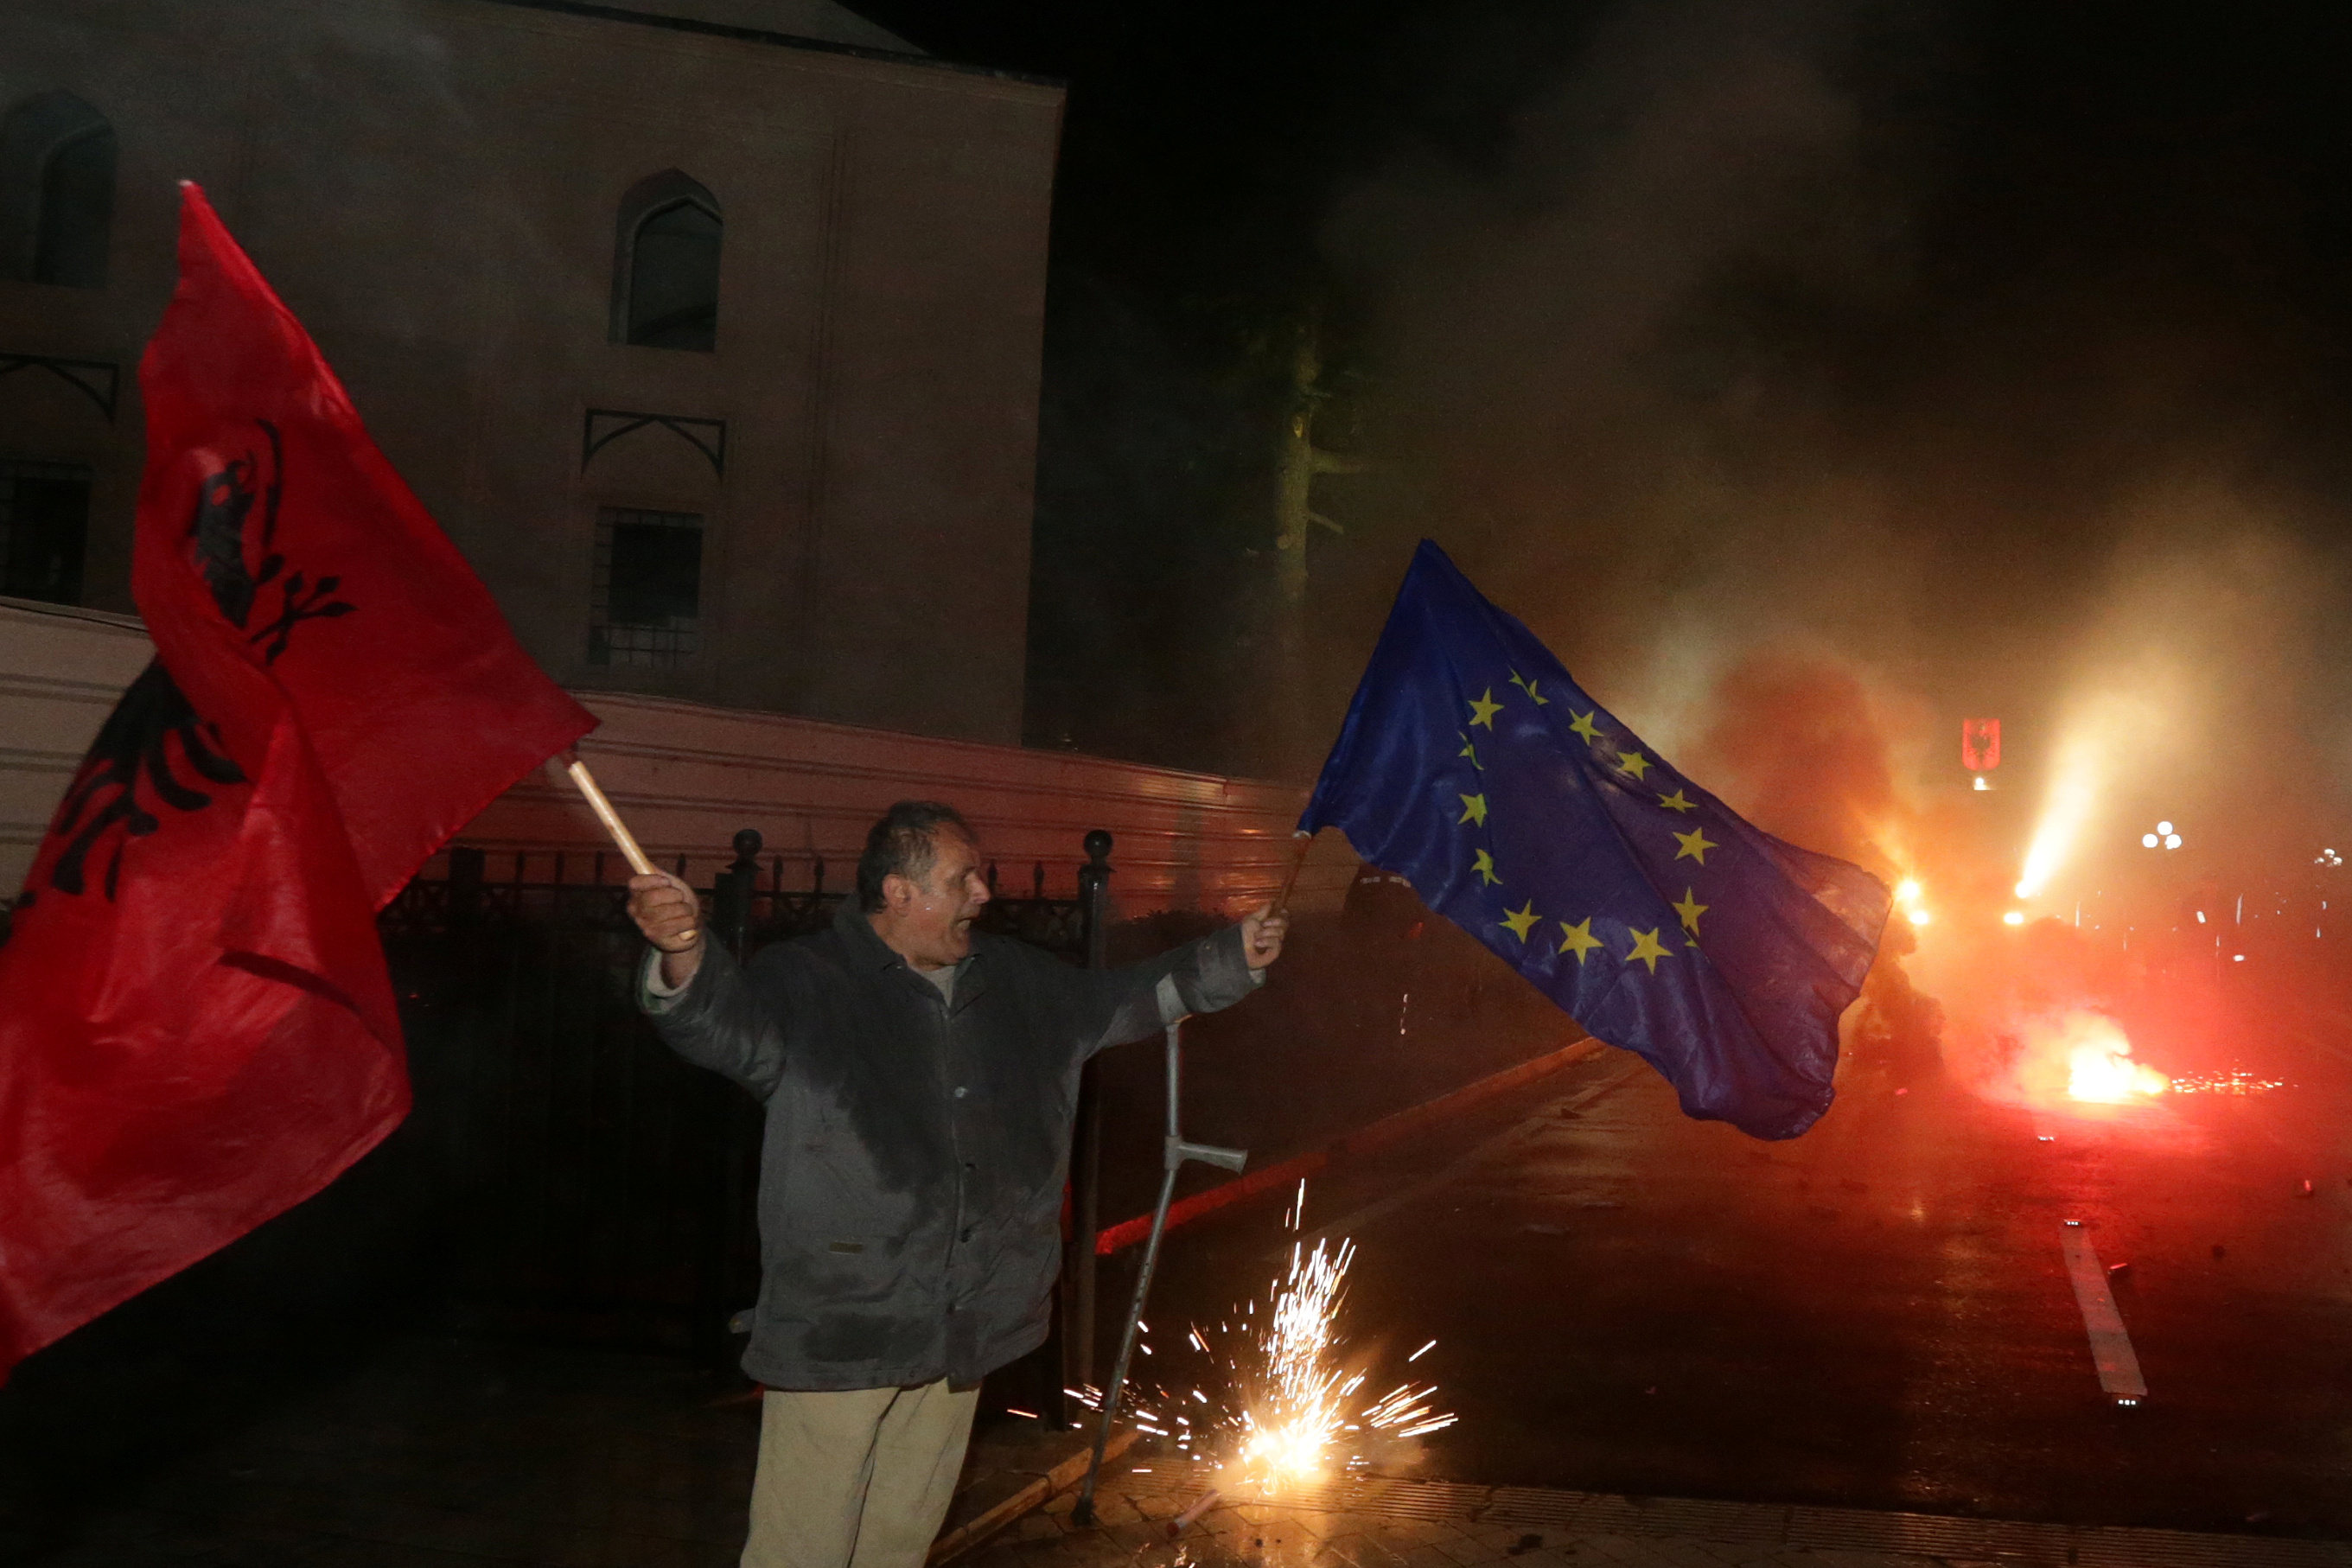 أحد أنصار حزب المعارضة يلوح بالعلم الألباني والأوروبي خلال مظاهرة مناهضة للحكومة أمام مبنى البرلمان في تيرانا